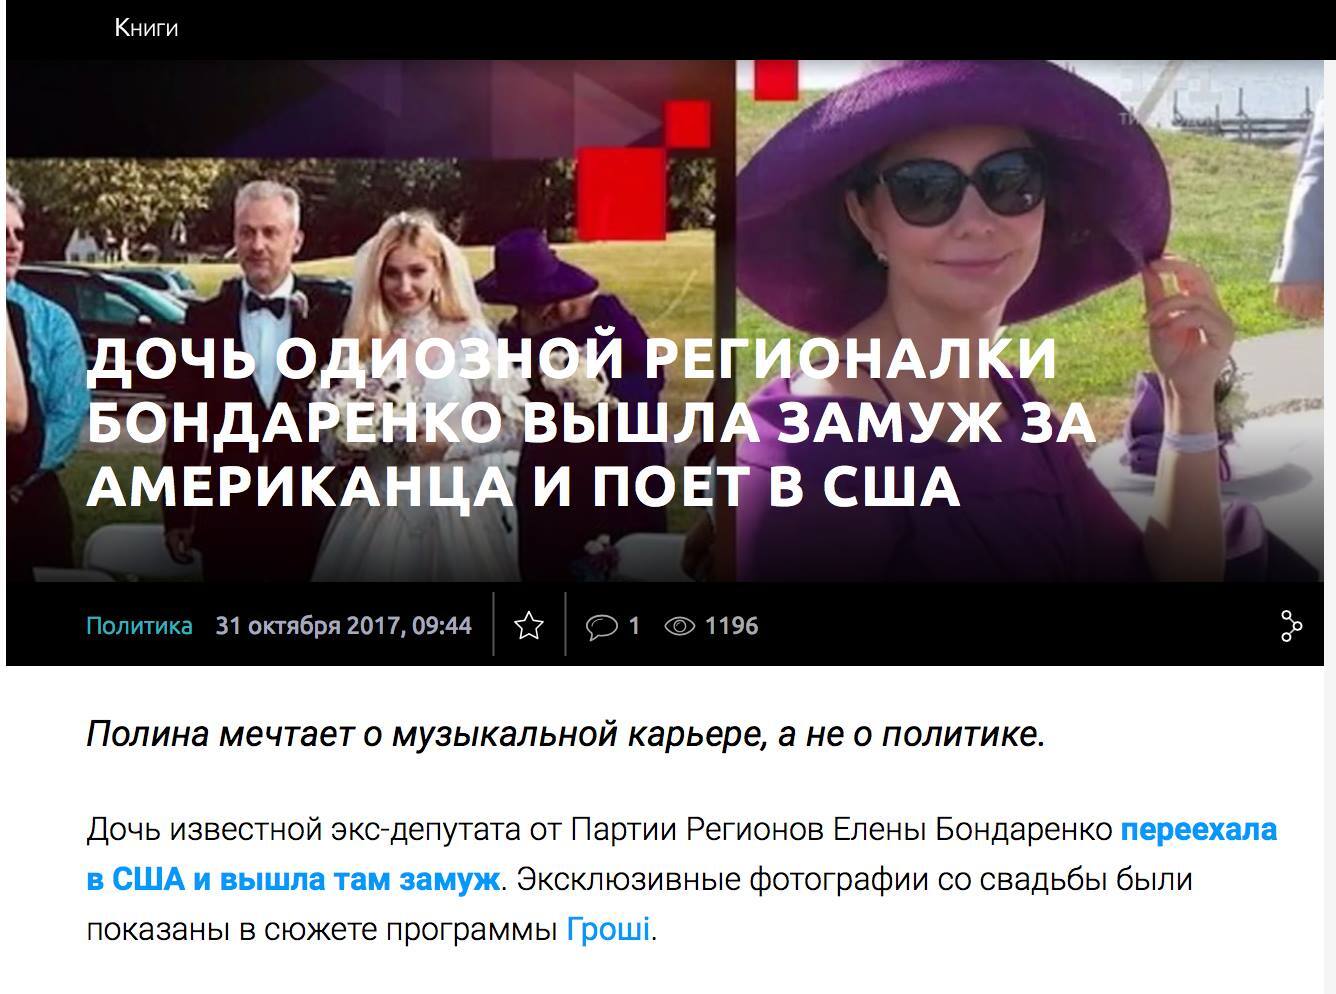 "Выбирают Запад": журналист указал на нестыковки в позиции Бондаренко